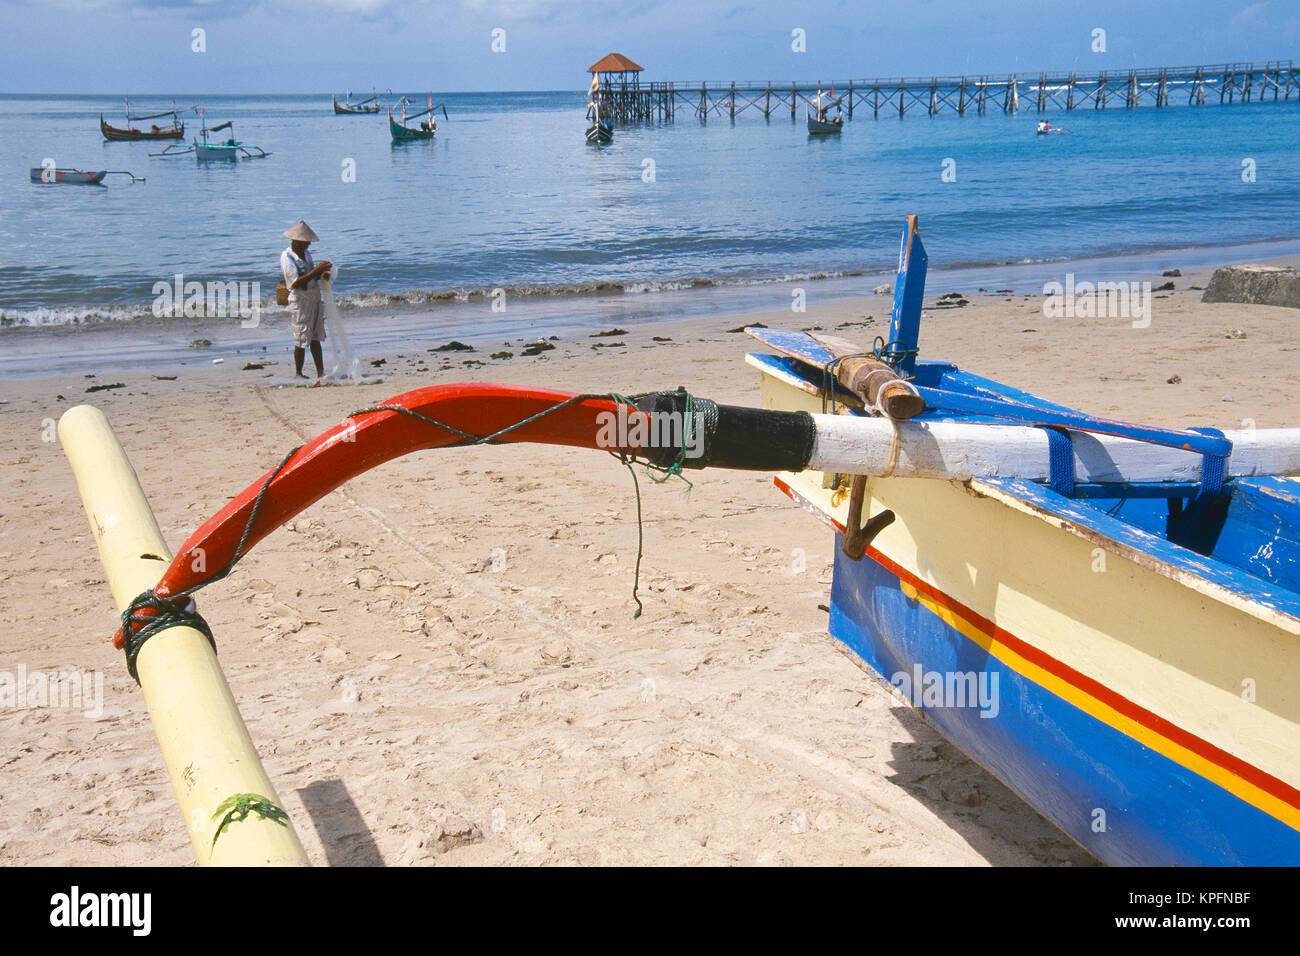 L'Asie, INDONÉSIE, Bali, Jimbaran et village de pêcheurs. Jukungs colorés (tangons) pêcheur balinaise avec en arrière-plan. Banque D'Images